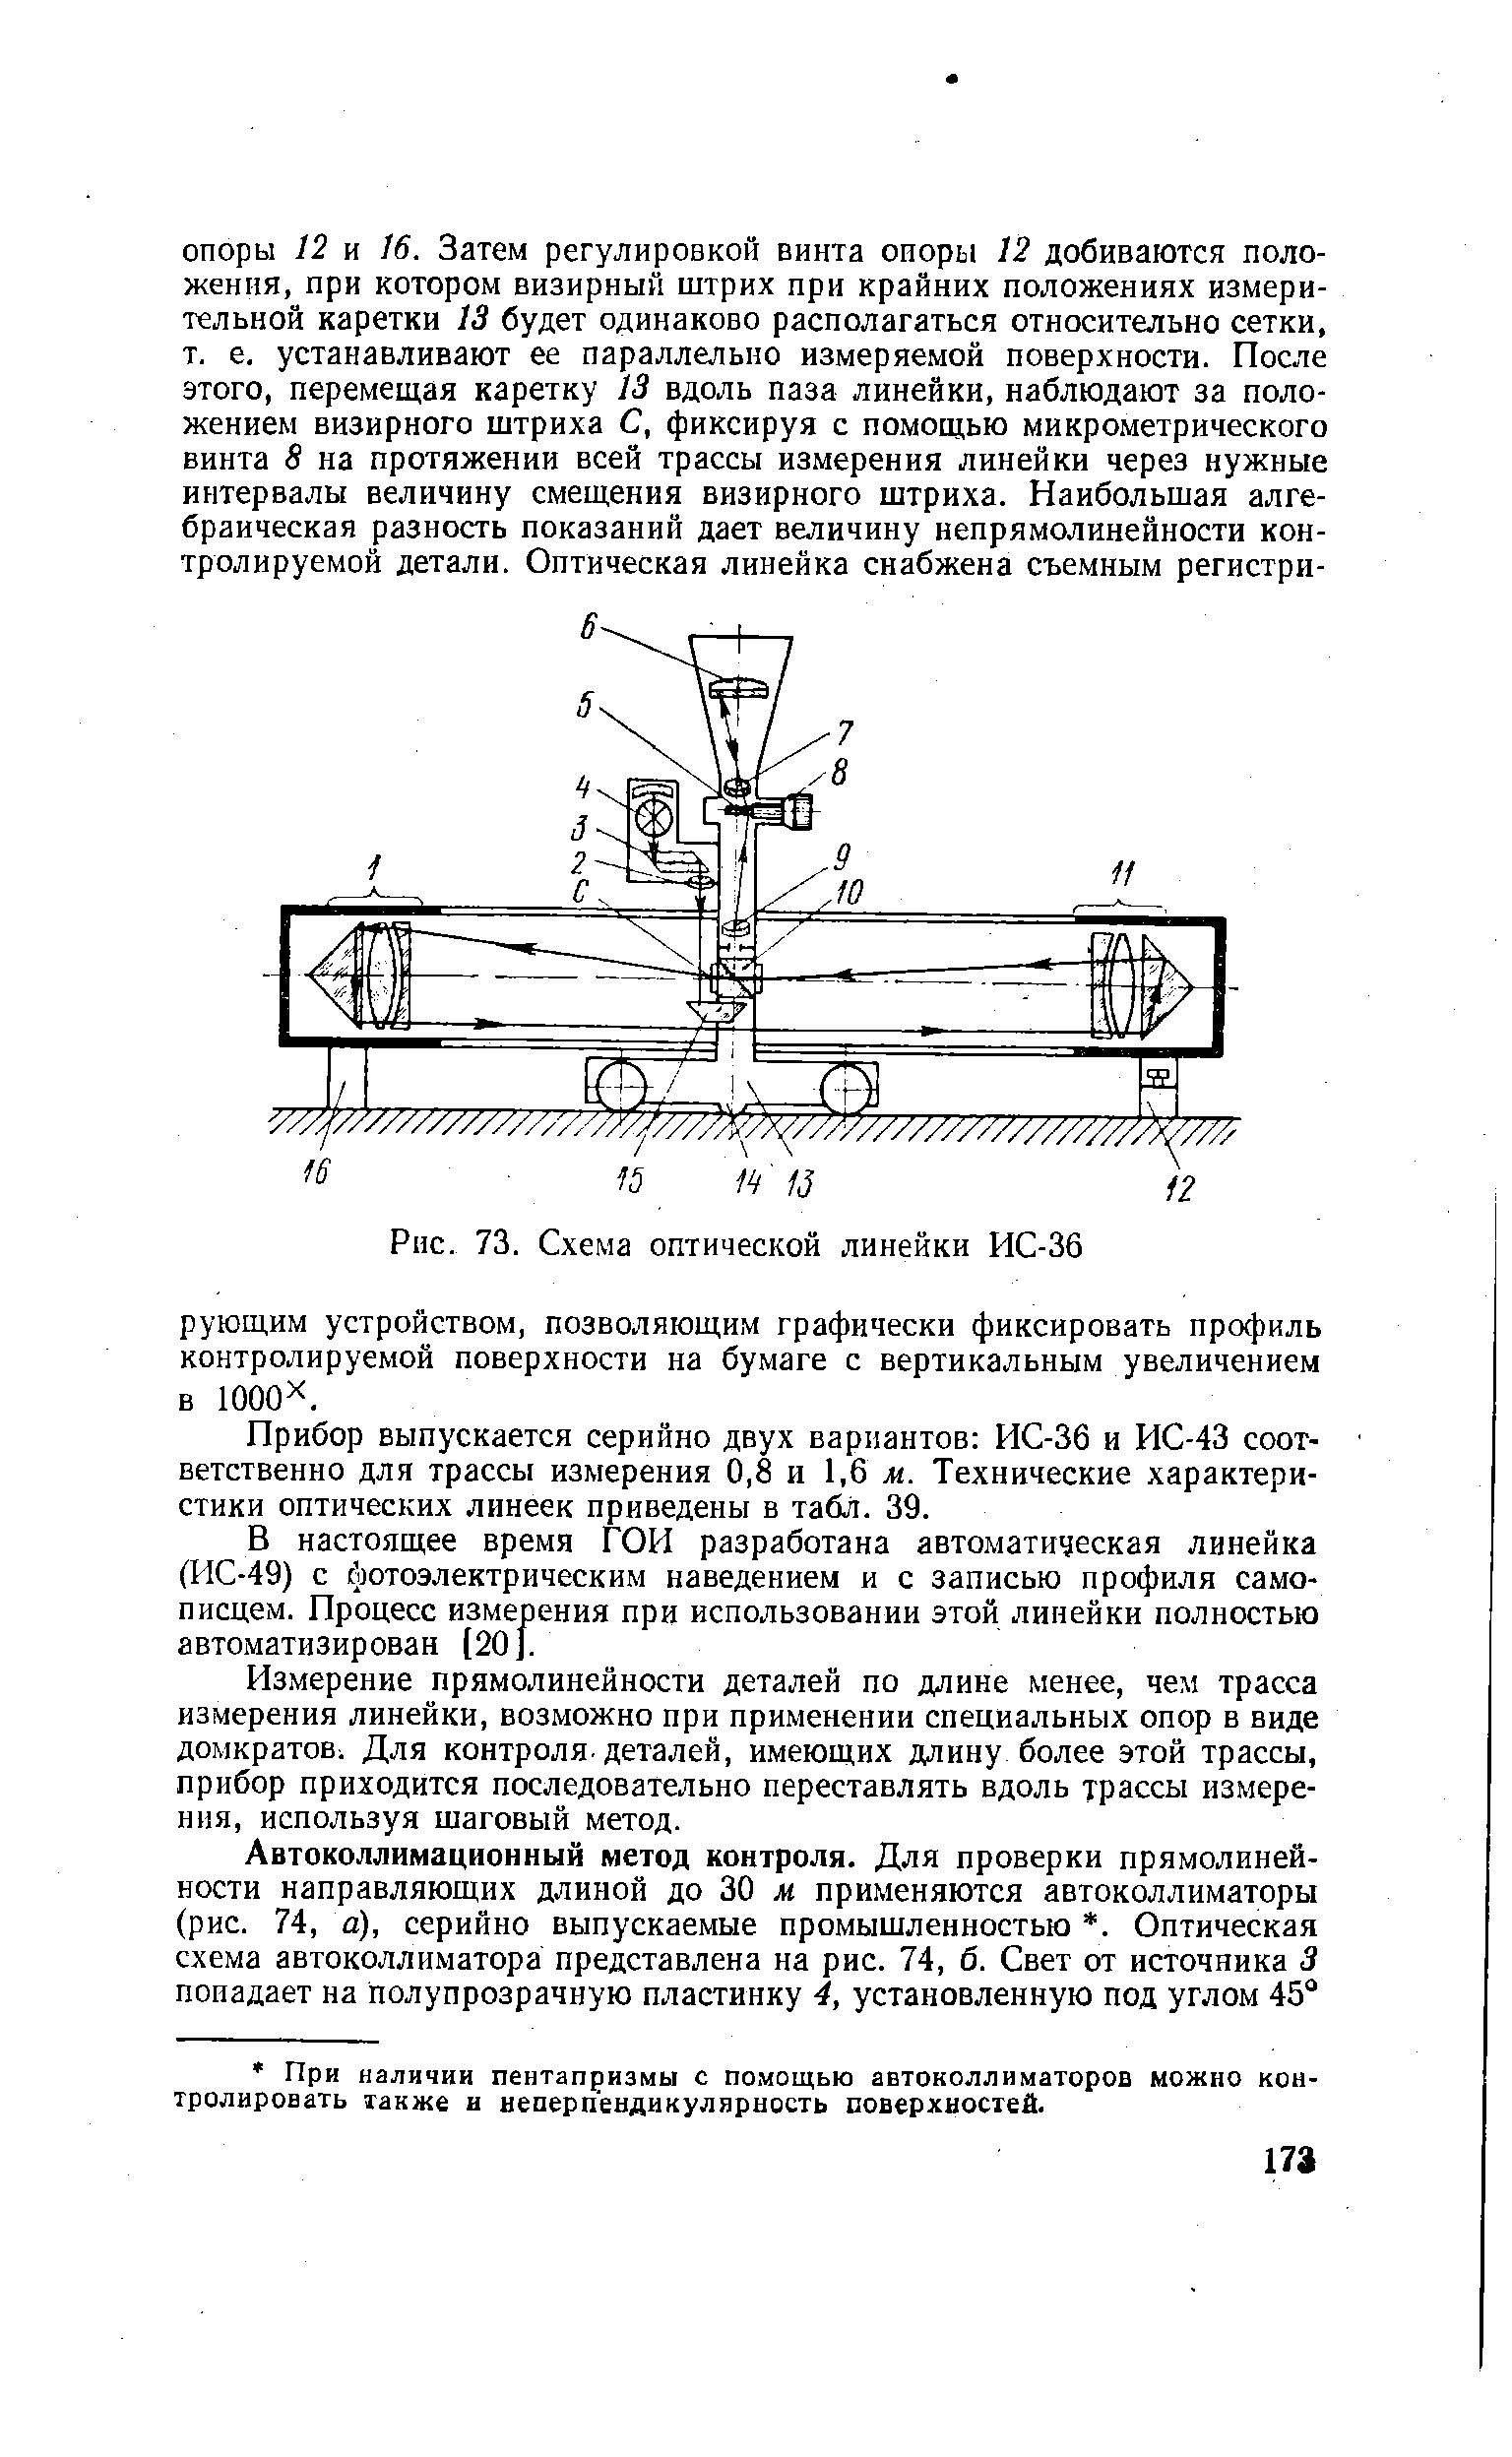 Рис. 73. Схема оптической линейки ИС-36